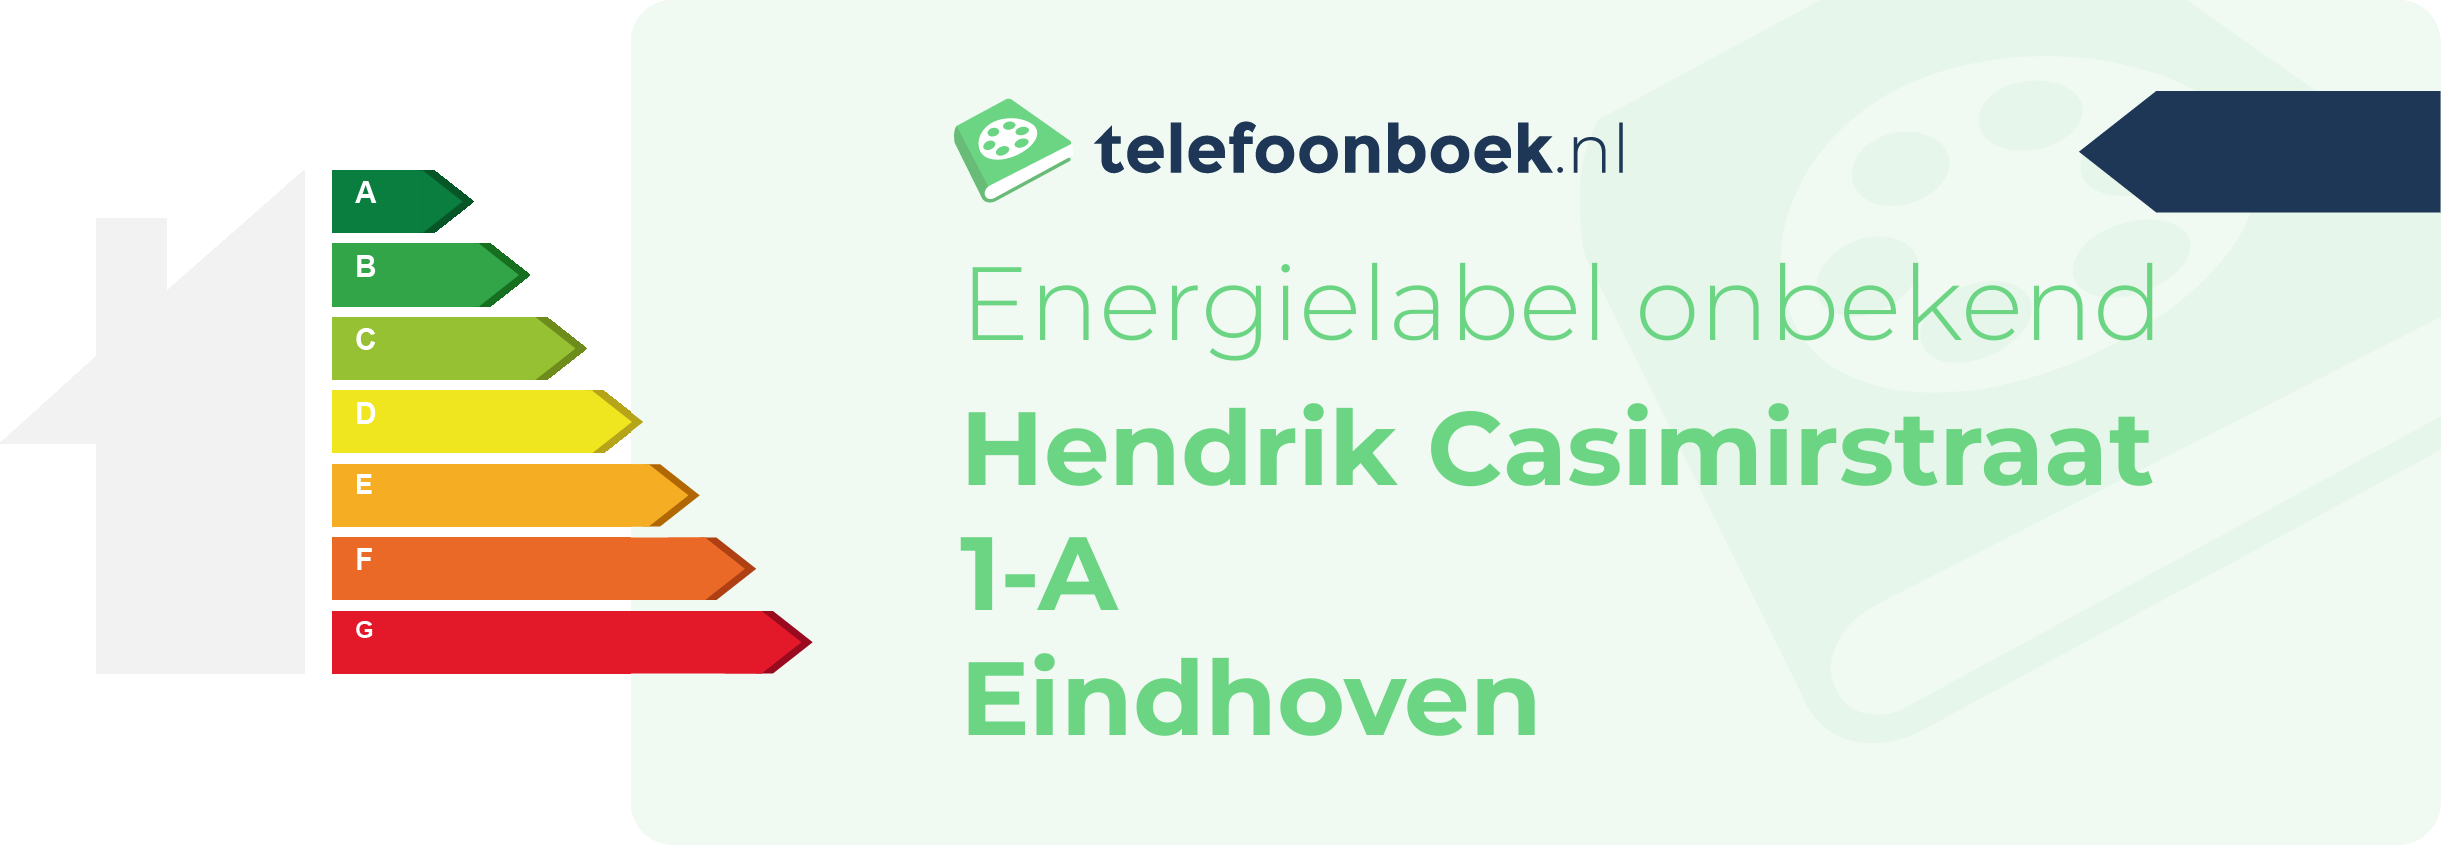 Energielabel Hendrik Casimirstraat 1-A Eindhoven